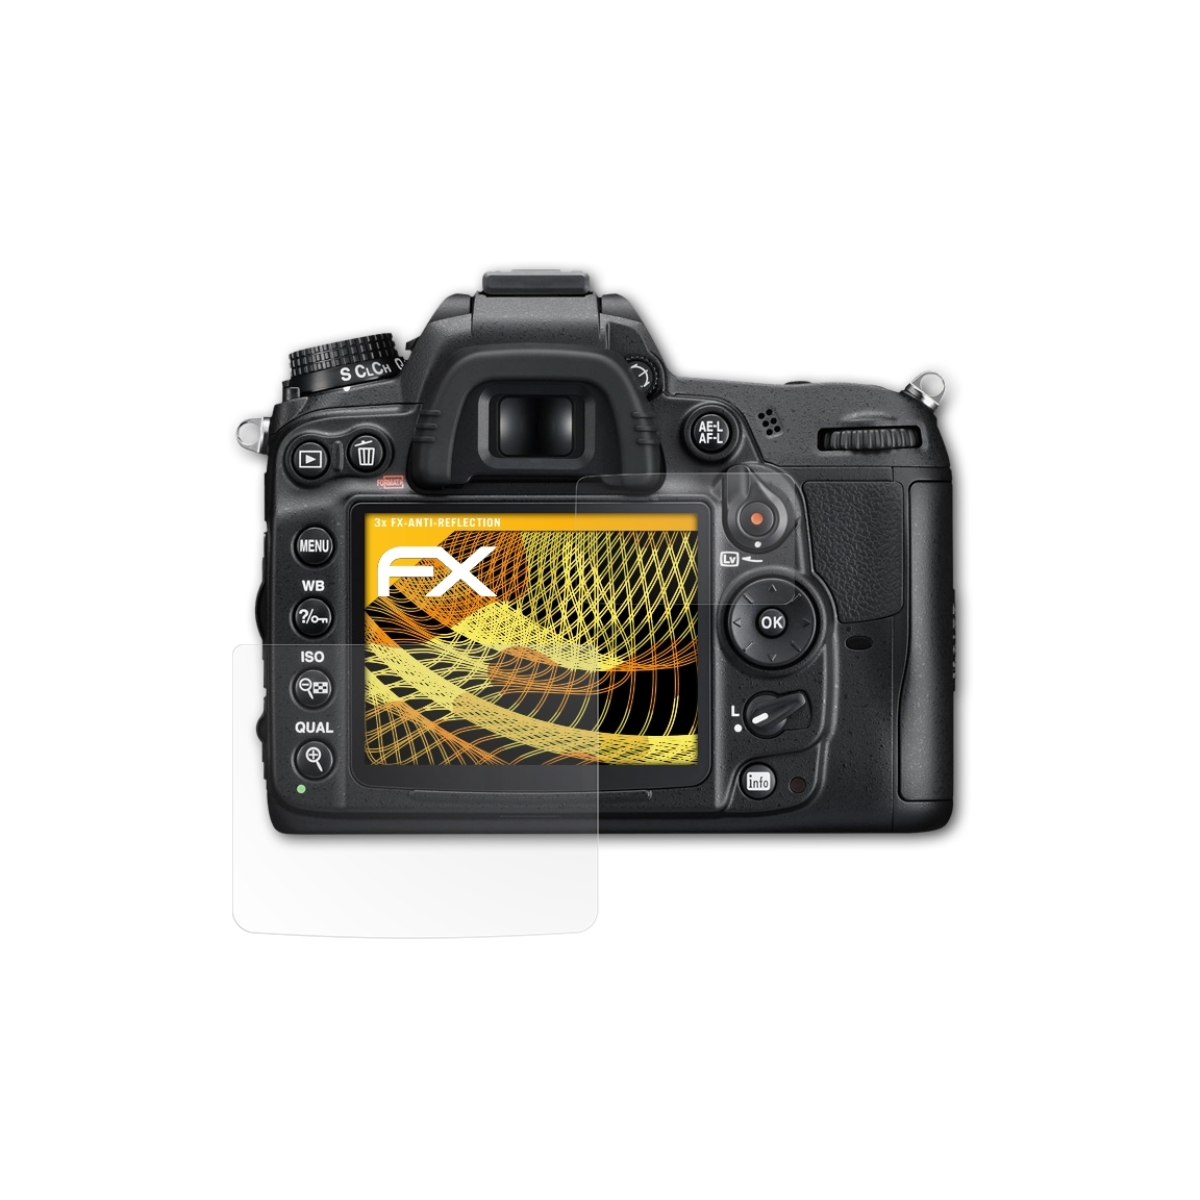 FX-Antireflex Displayschutz(für ATFOLIX Nikon D7000) 3x